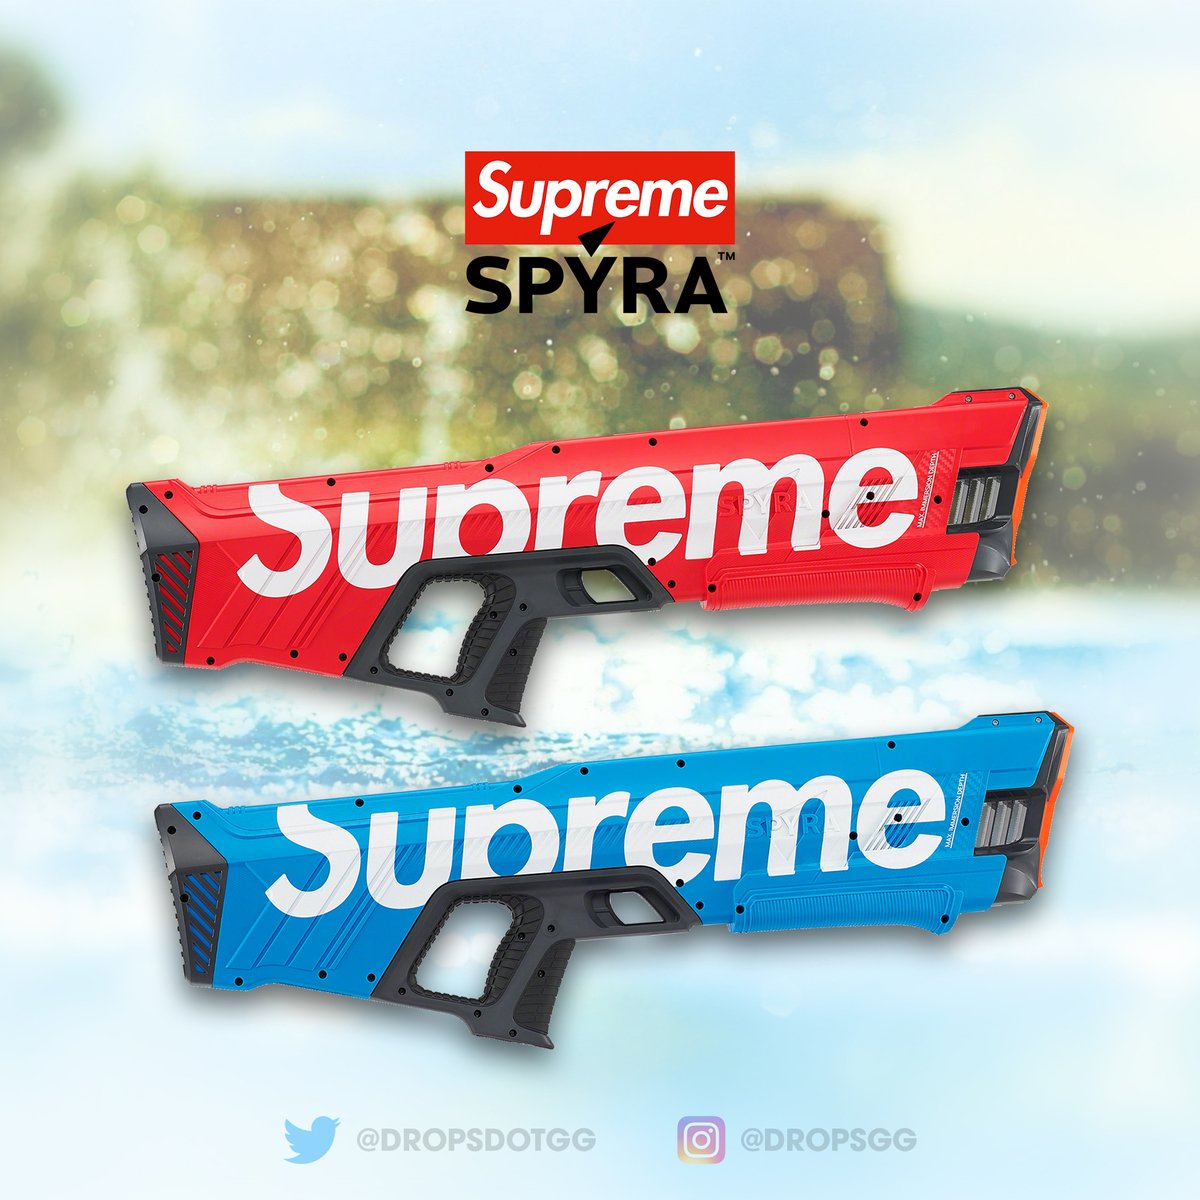 全新連盒連包裝Supreme Spyra Two Water Blaster, 興趣及遊戲, 玩具